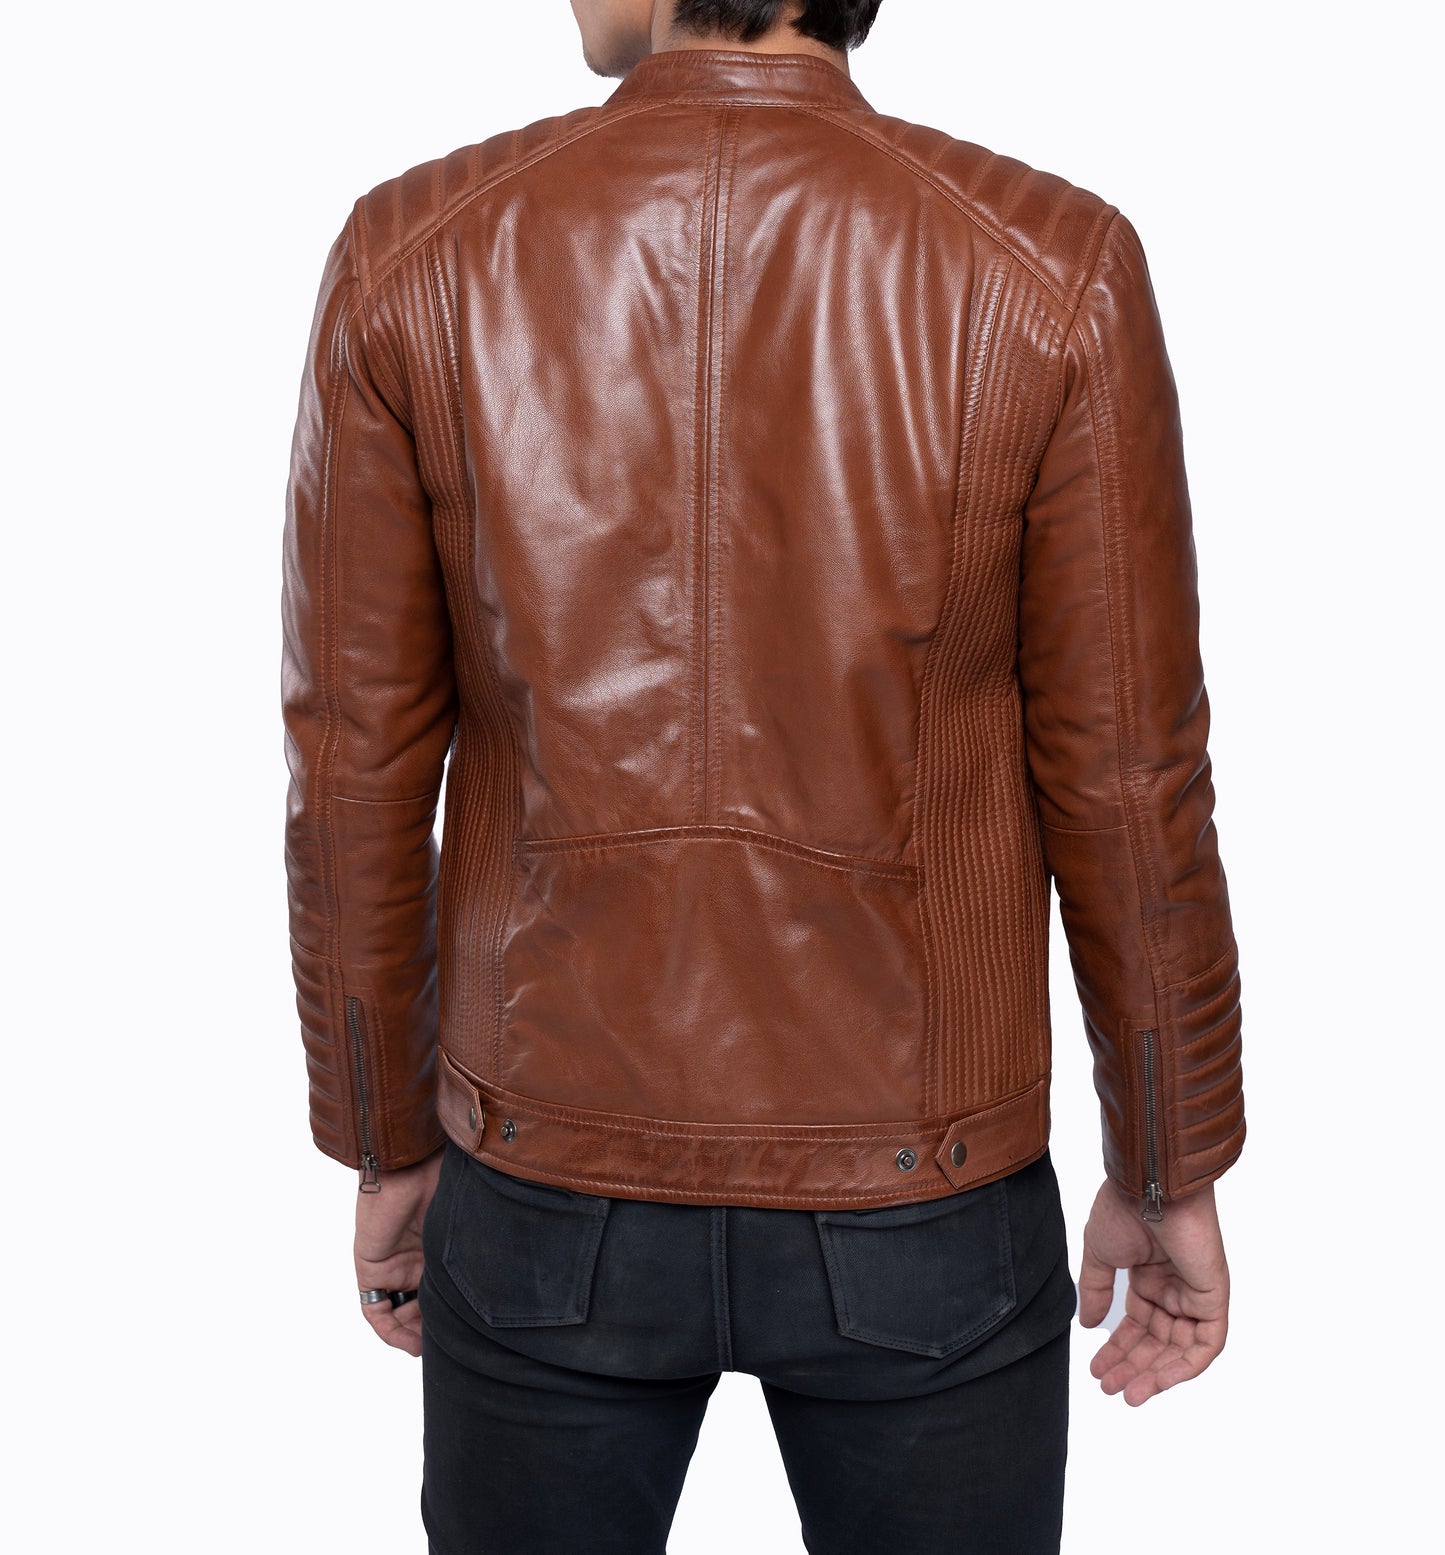 Men's Real Vintage Leather Quilted Panels Cafe Racer Jacket, Bikers Jacket